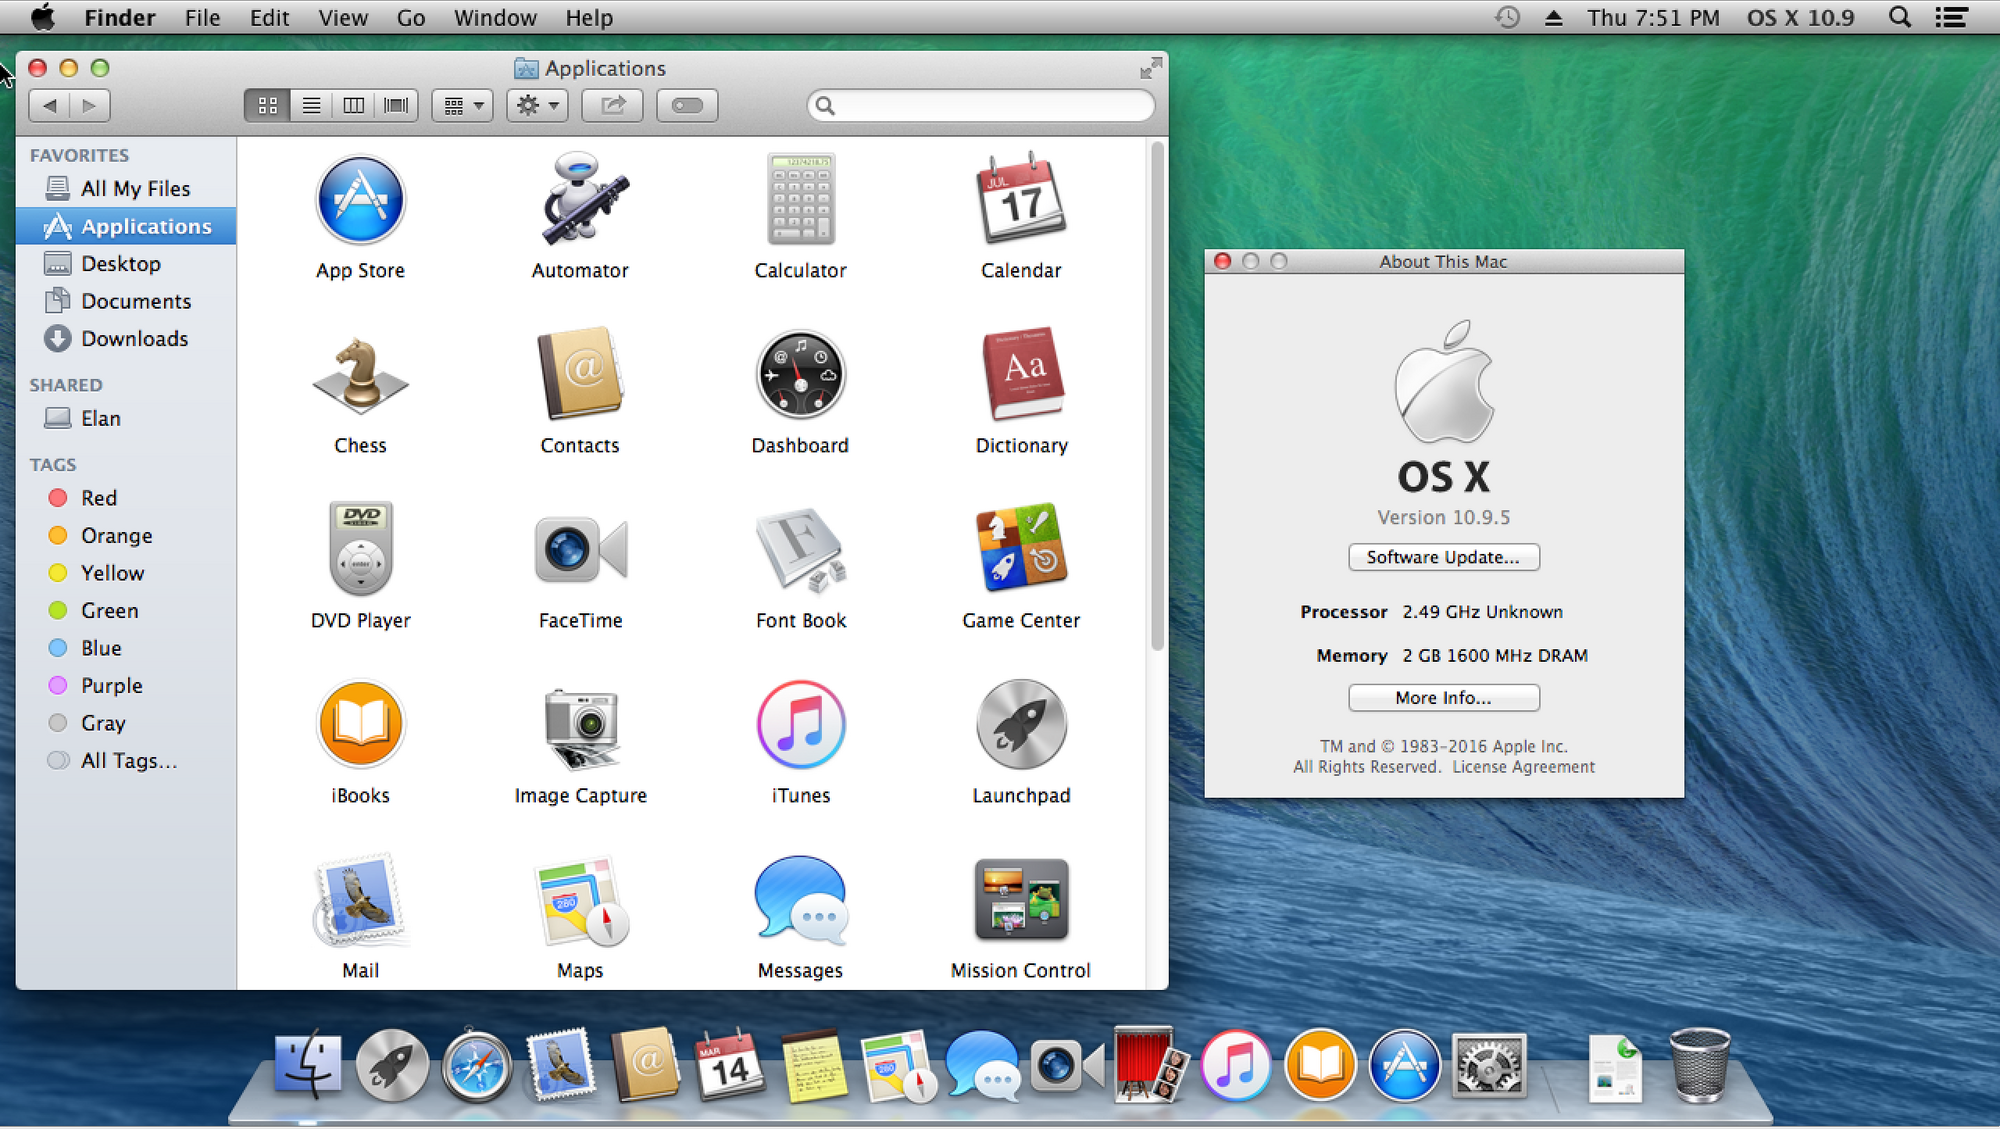 iweb for mac 10.5.8